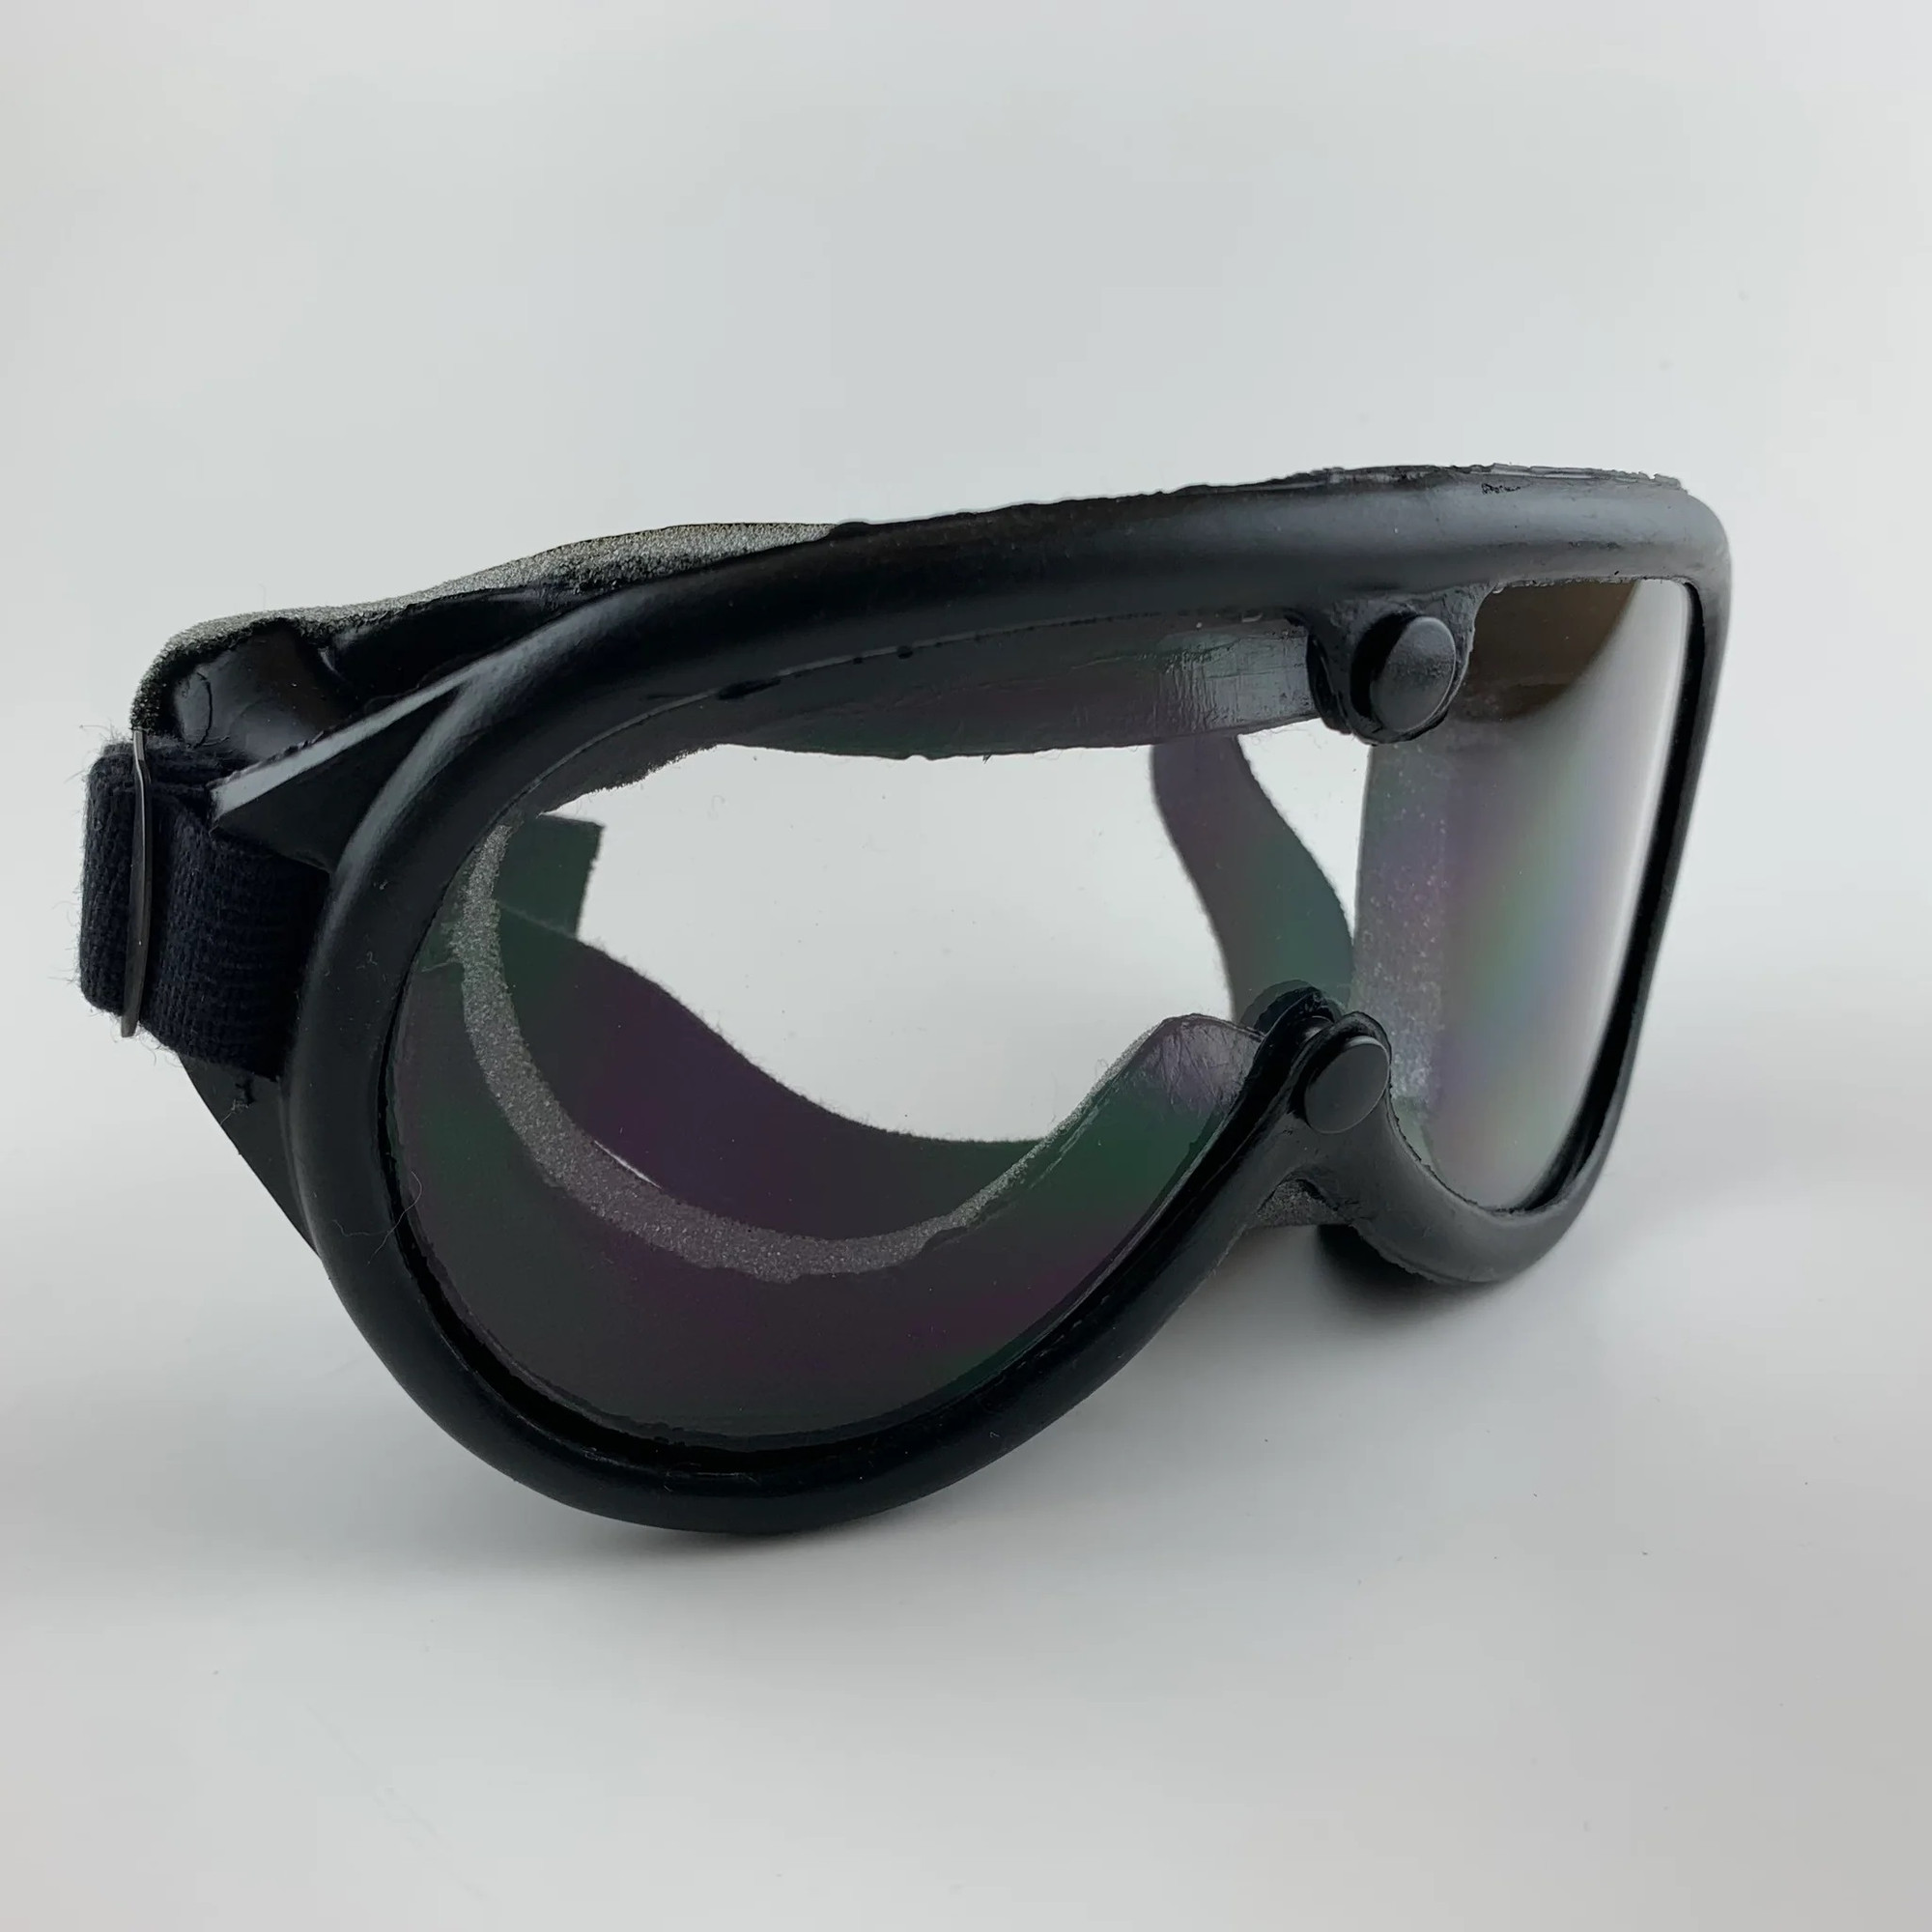 Rothco GI Type Sun, Wind & Dust Goggles